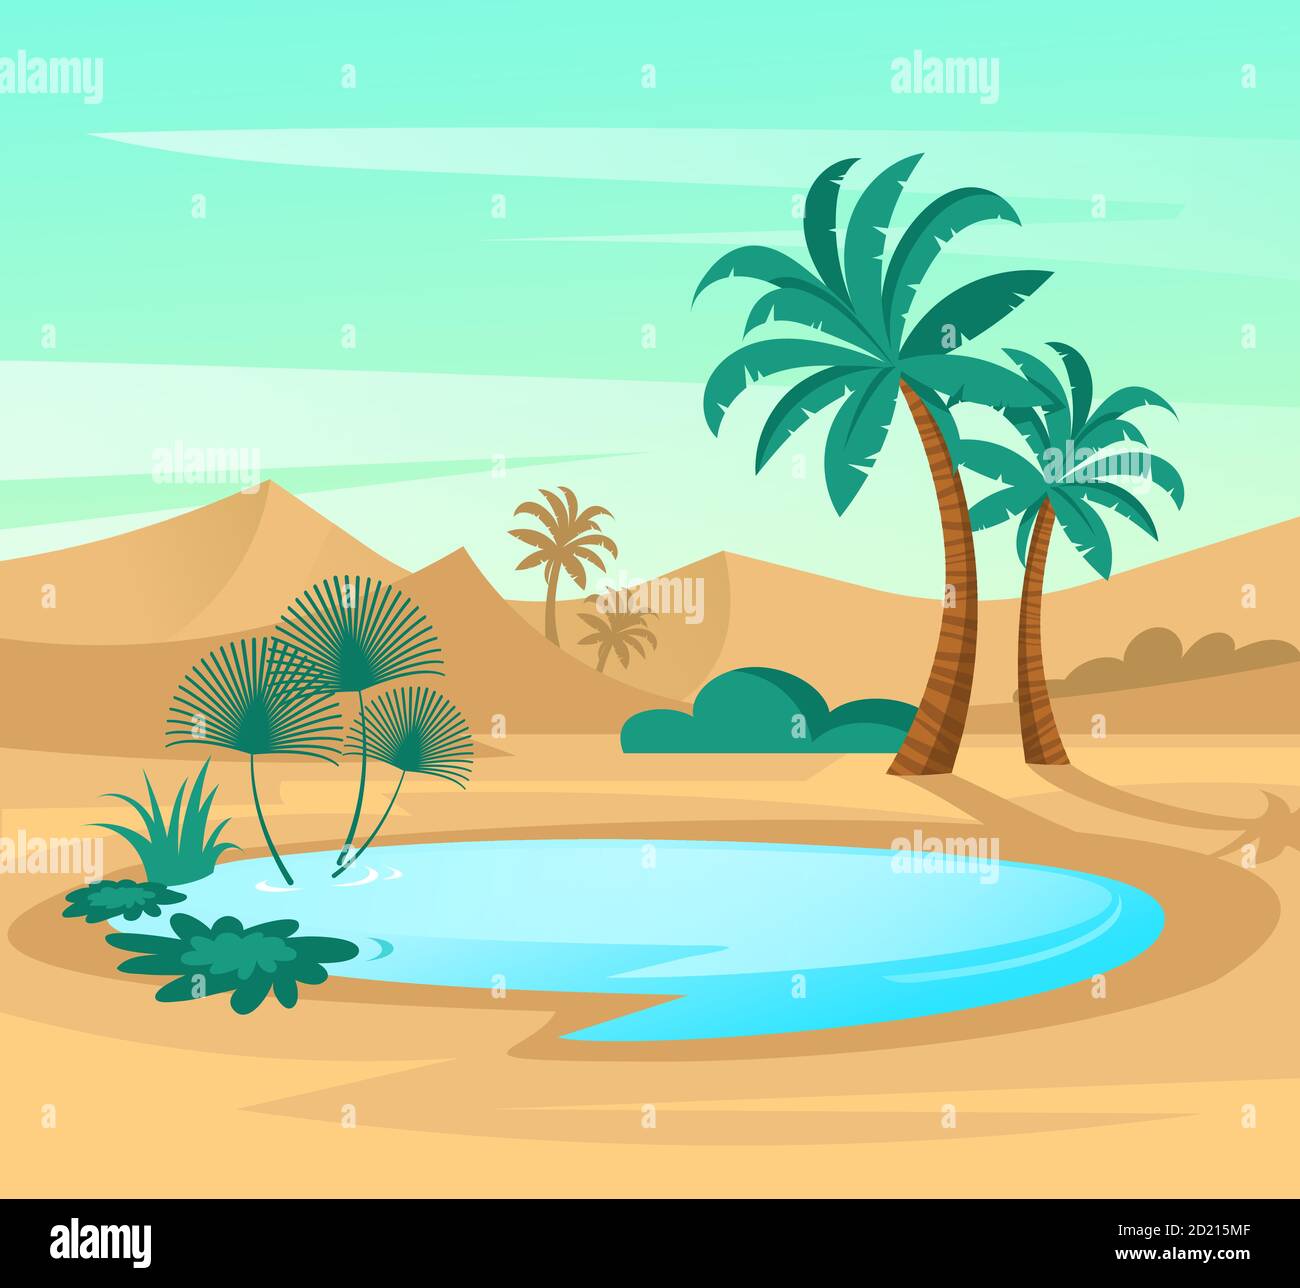 Oasis dans le désert. Paysage en design plat. Illustration vectorielle avec dunes de sable, lac bleu et palmiers. Illustration de Vecteur